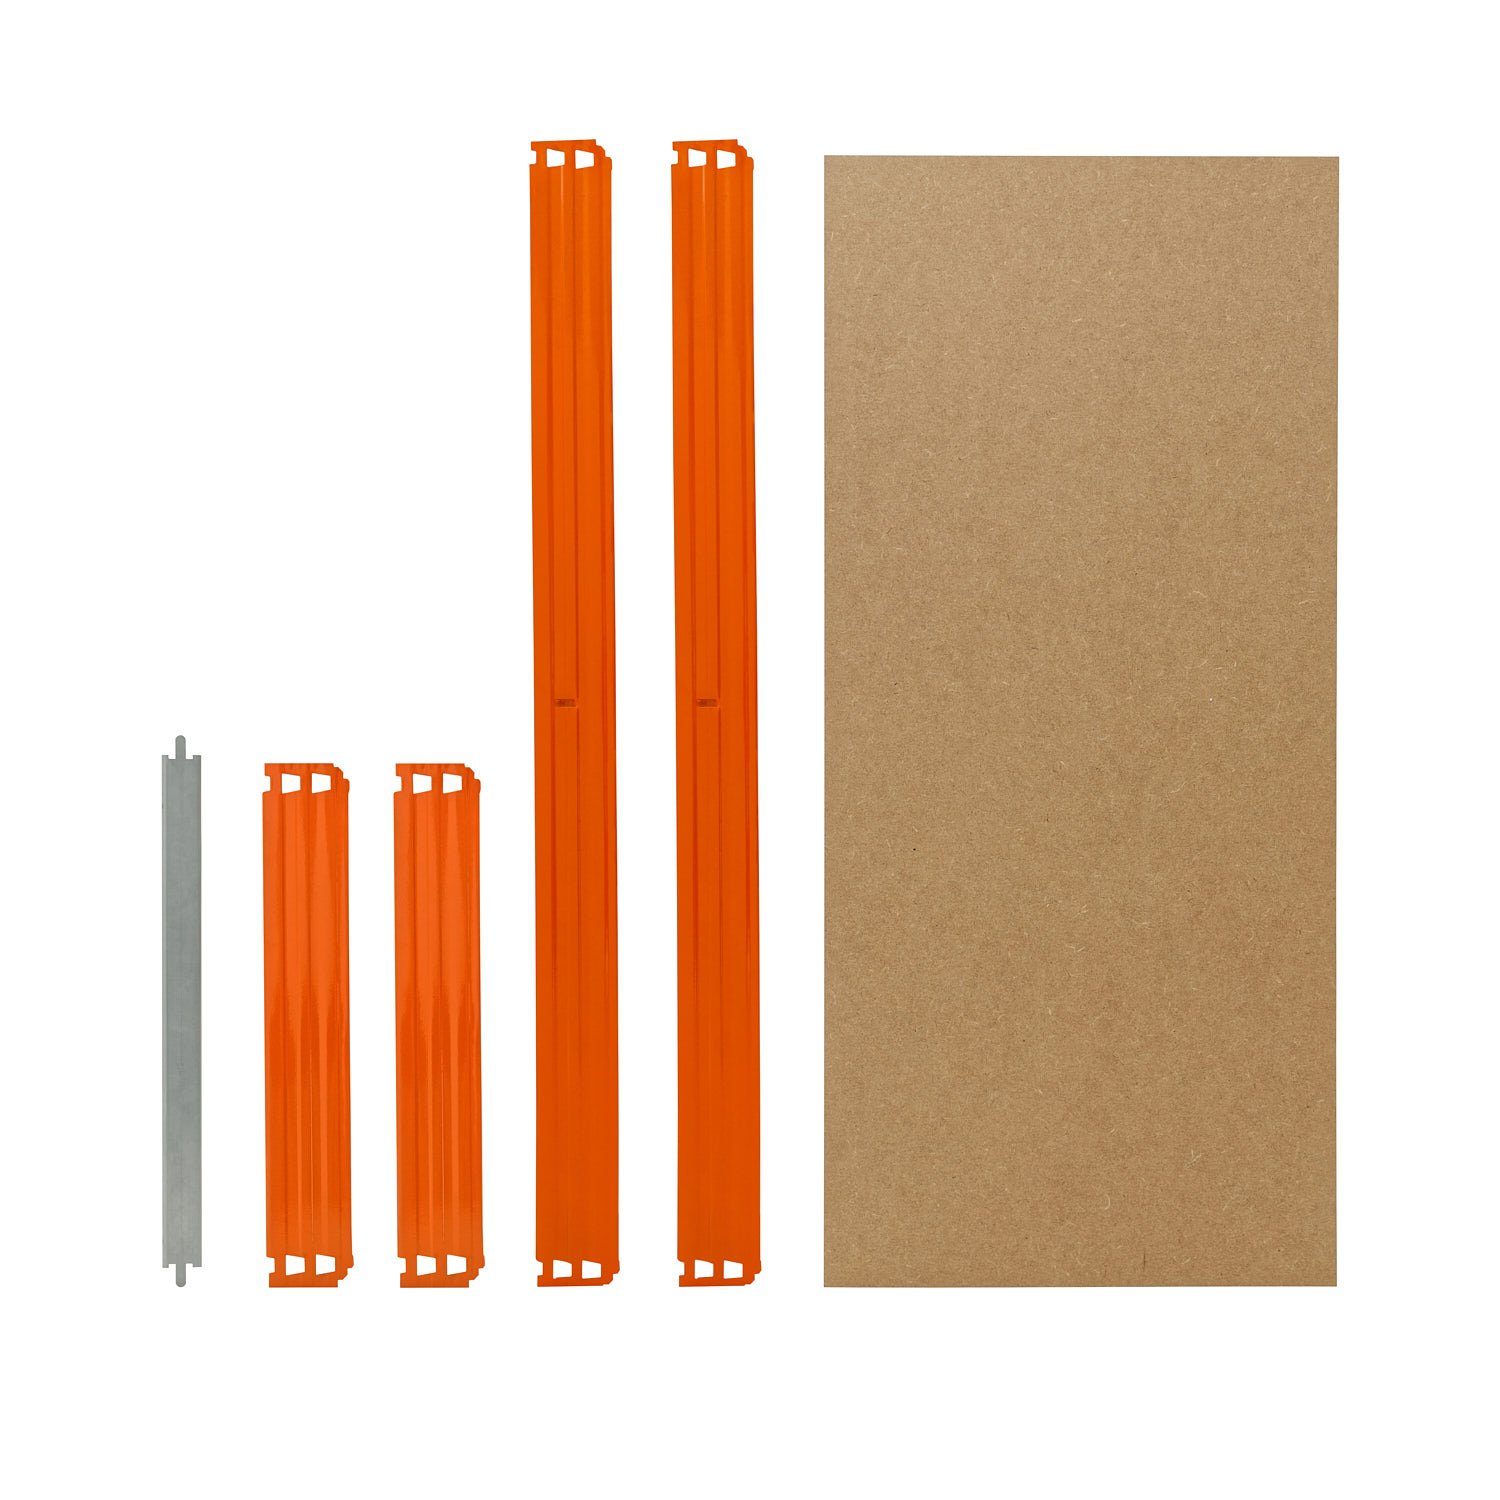 23x45 cm Schwerlastregal in Steckregale HDF-Fachboden, zusätzliche Fachboden-Set Komplettes PROFI, für shelfplaza Fachböden blau-orange, Schwerlastregale für